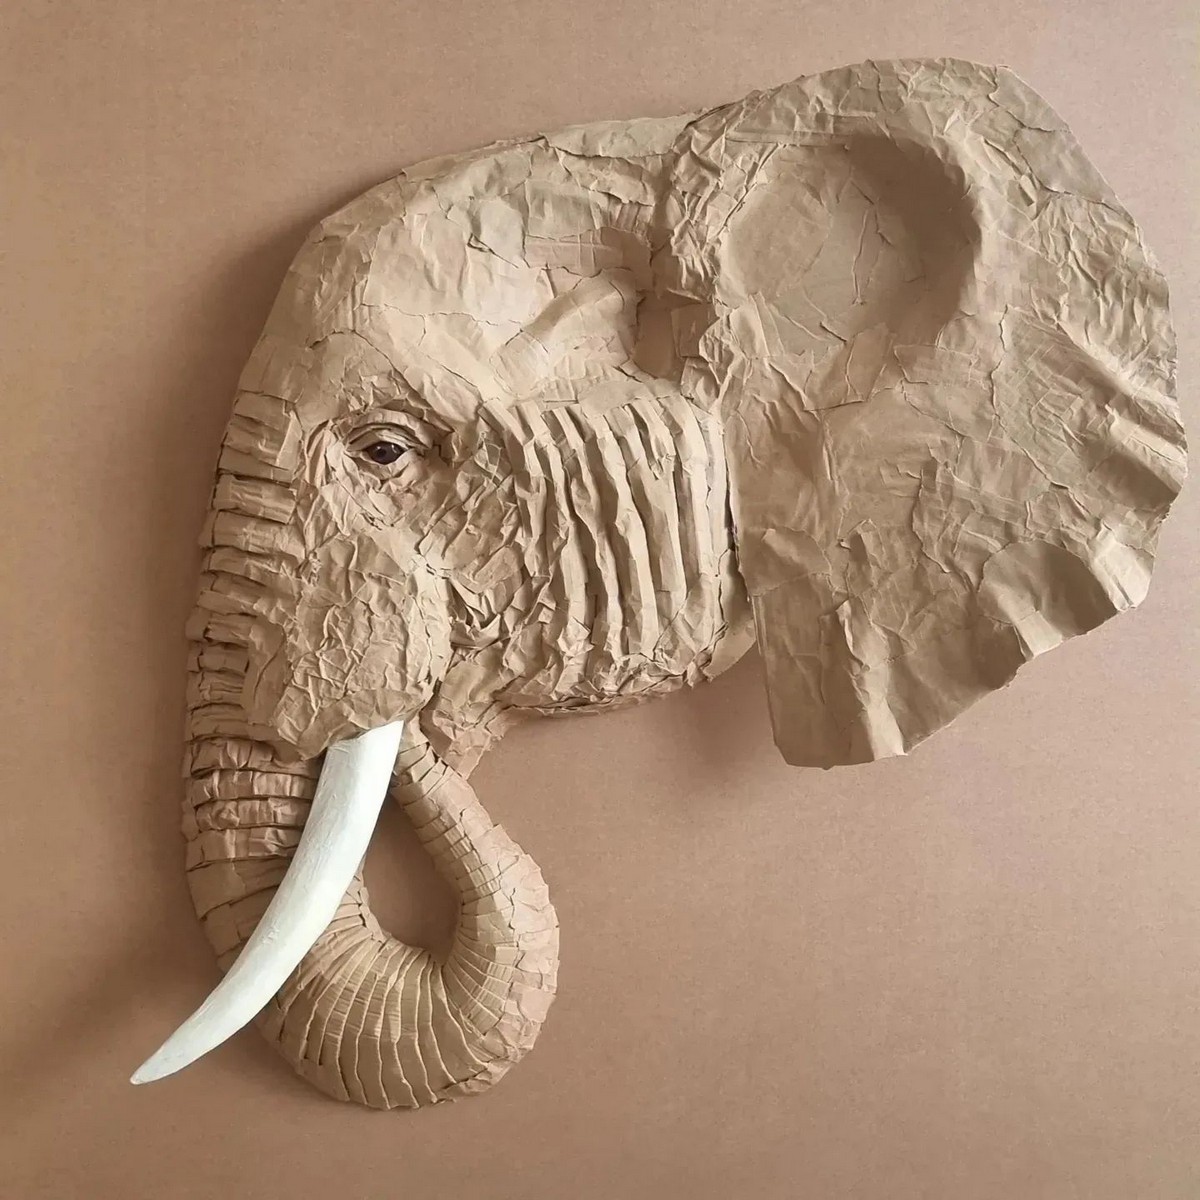 Реалистичные скульптуры животных из выброшенных материалов от Джоша Глюкштейна